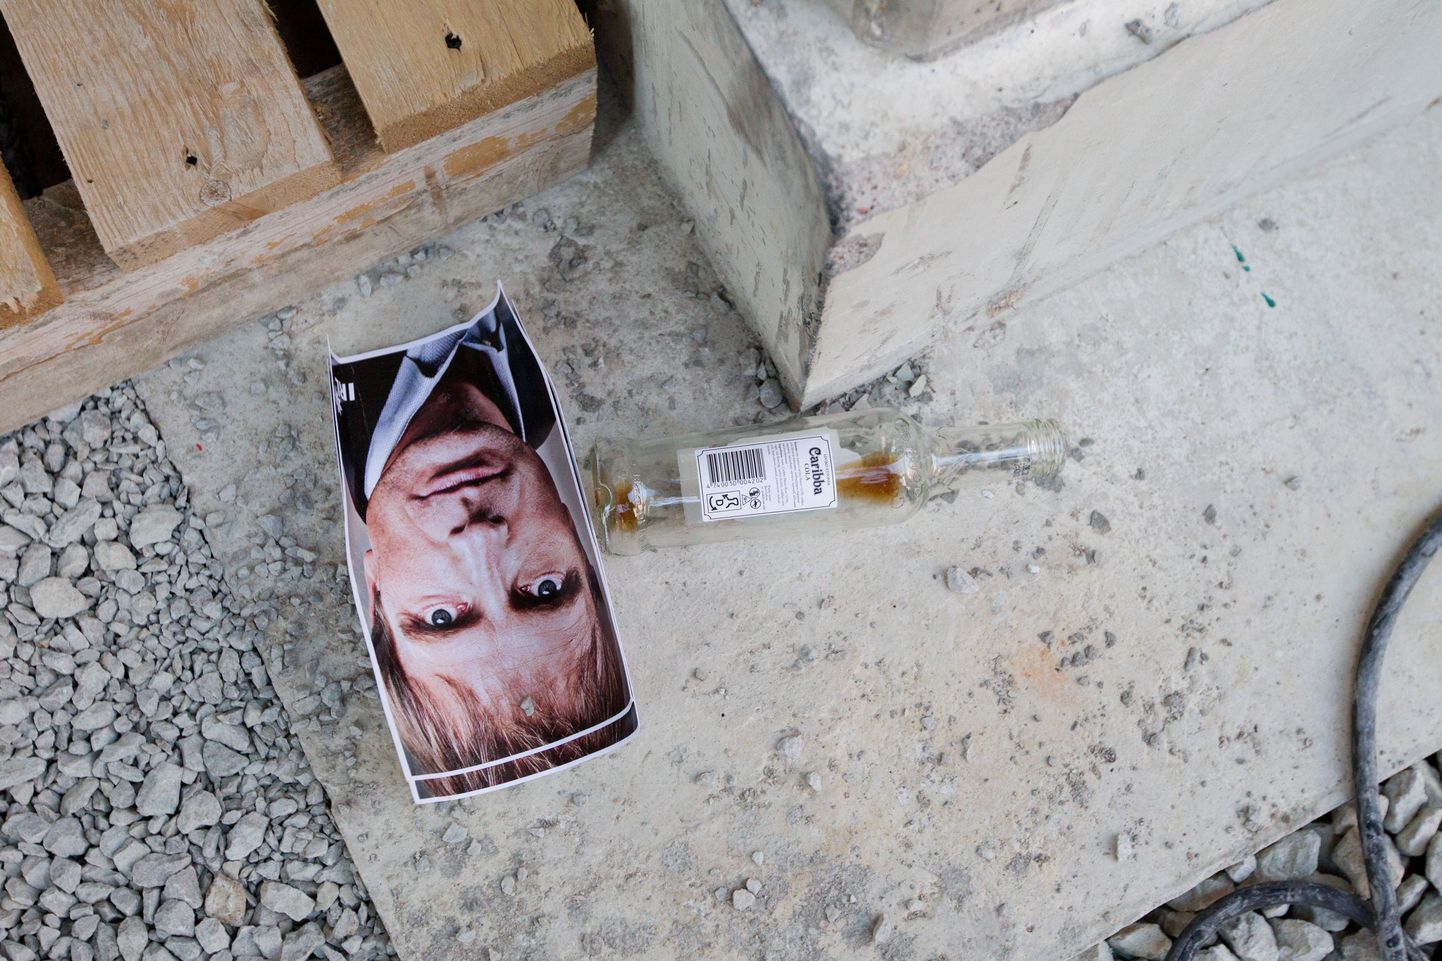 Предвыборное Ласнамяэ: запуганные жители района тайно выпили за здоровье Ээрика-Нийлеса Кросса.